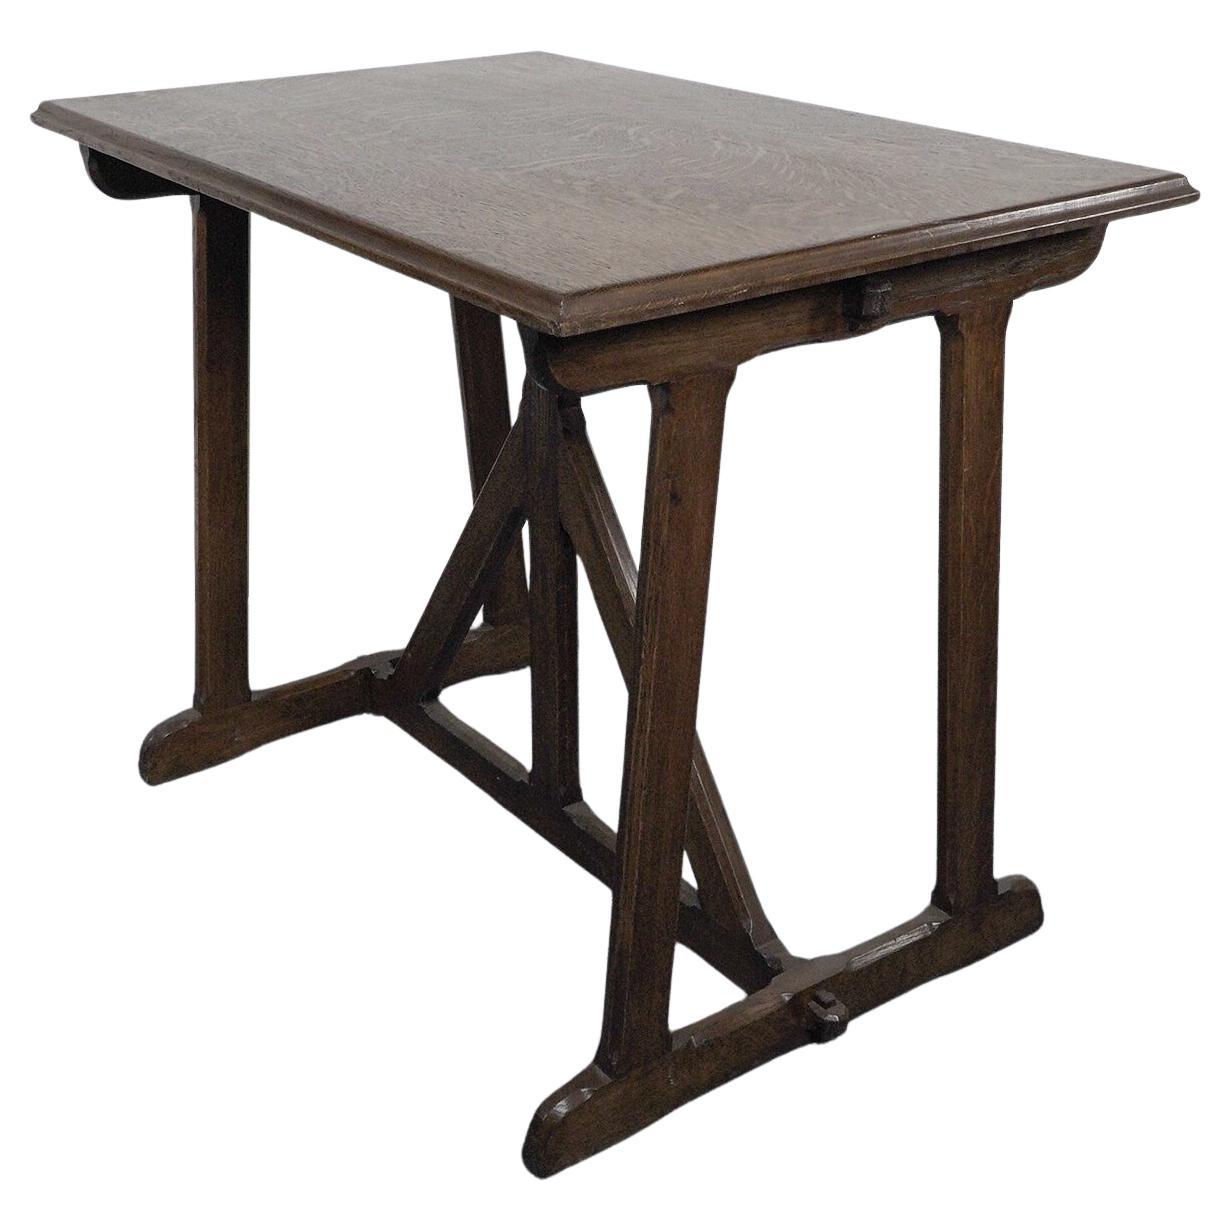 A W N Pugin, nach einem Entwurf von. Ein Tisch aus Eiche im Stil der Gotik des späten 20.